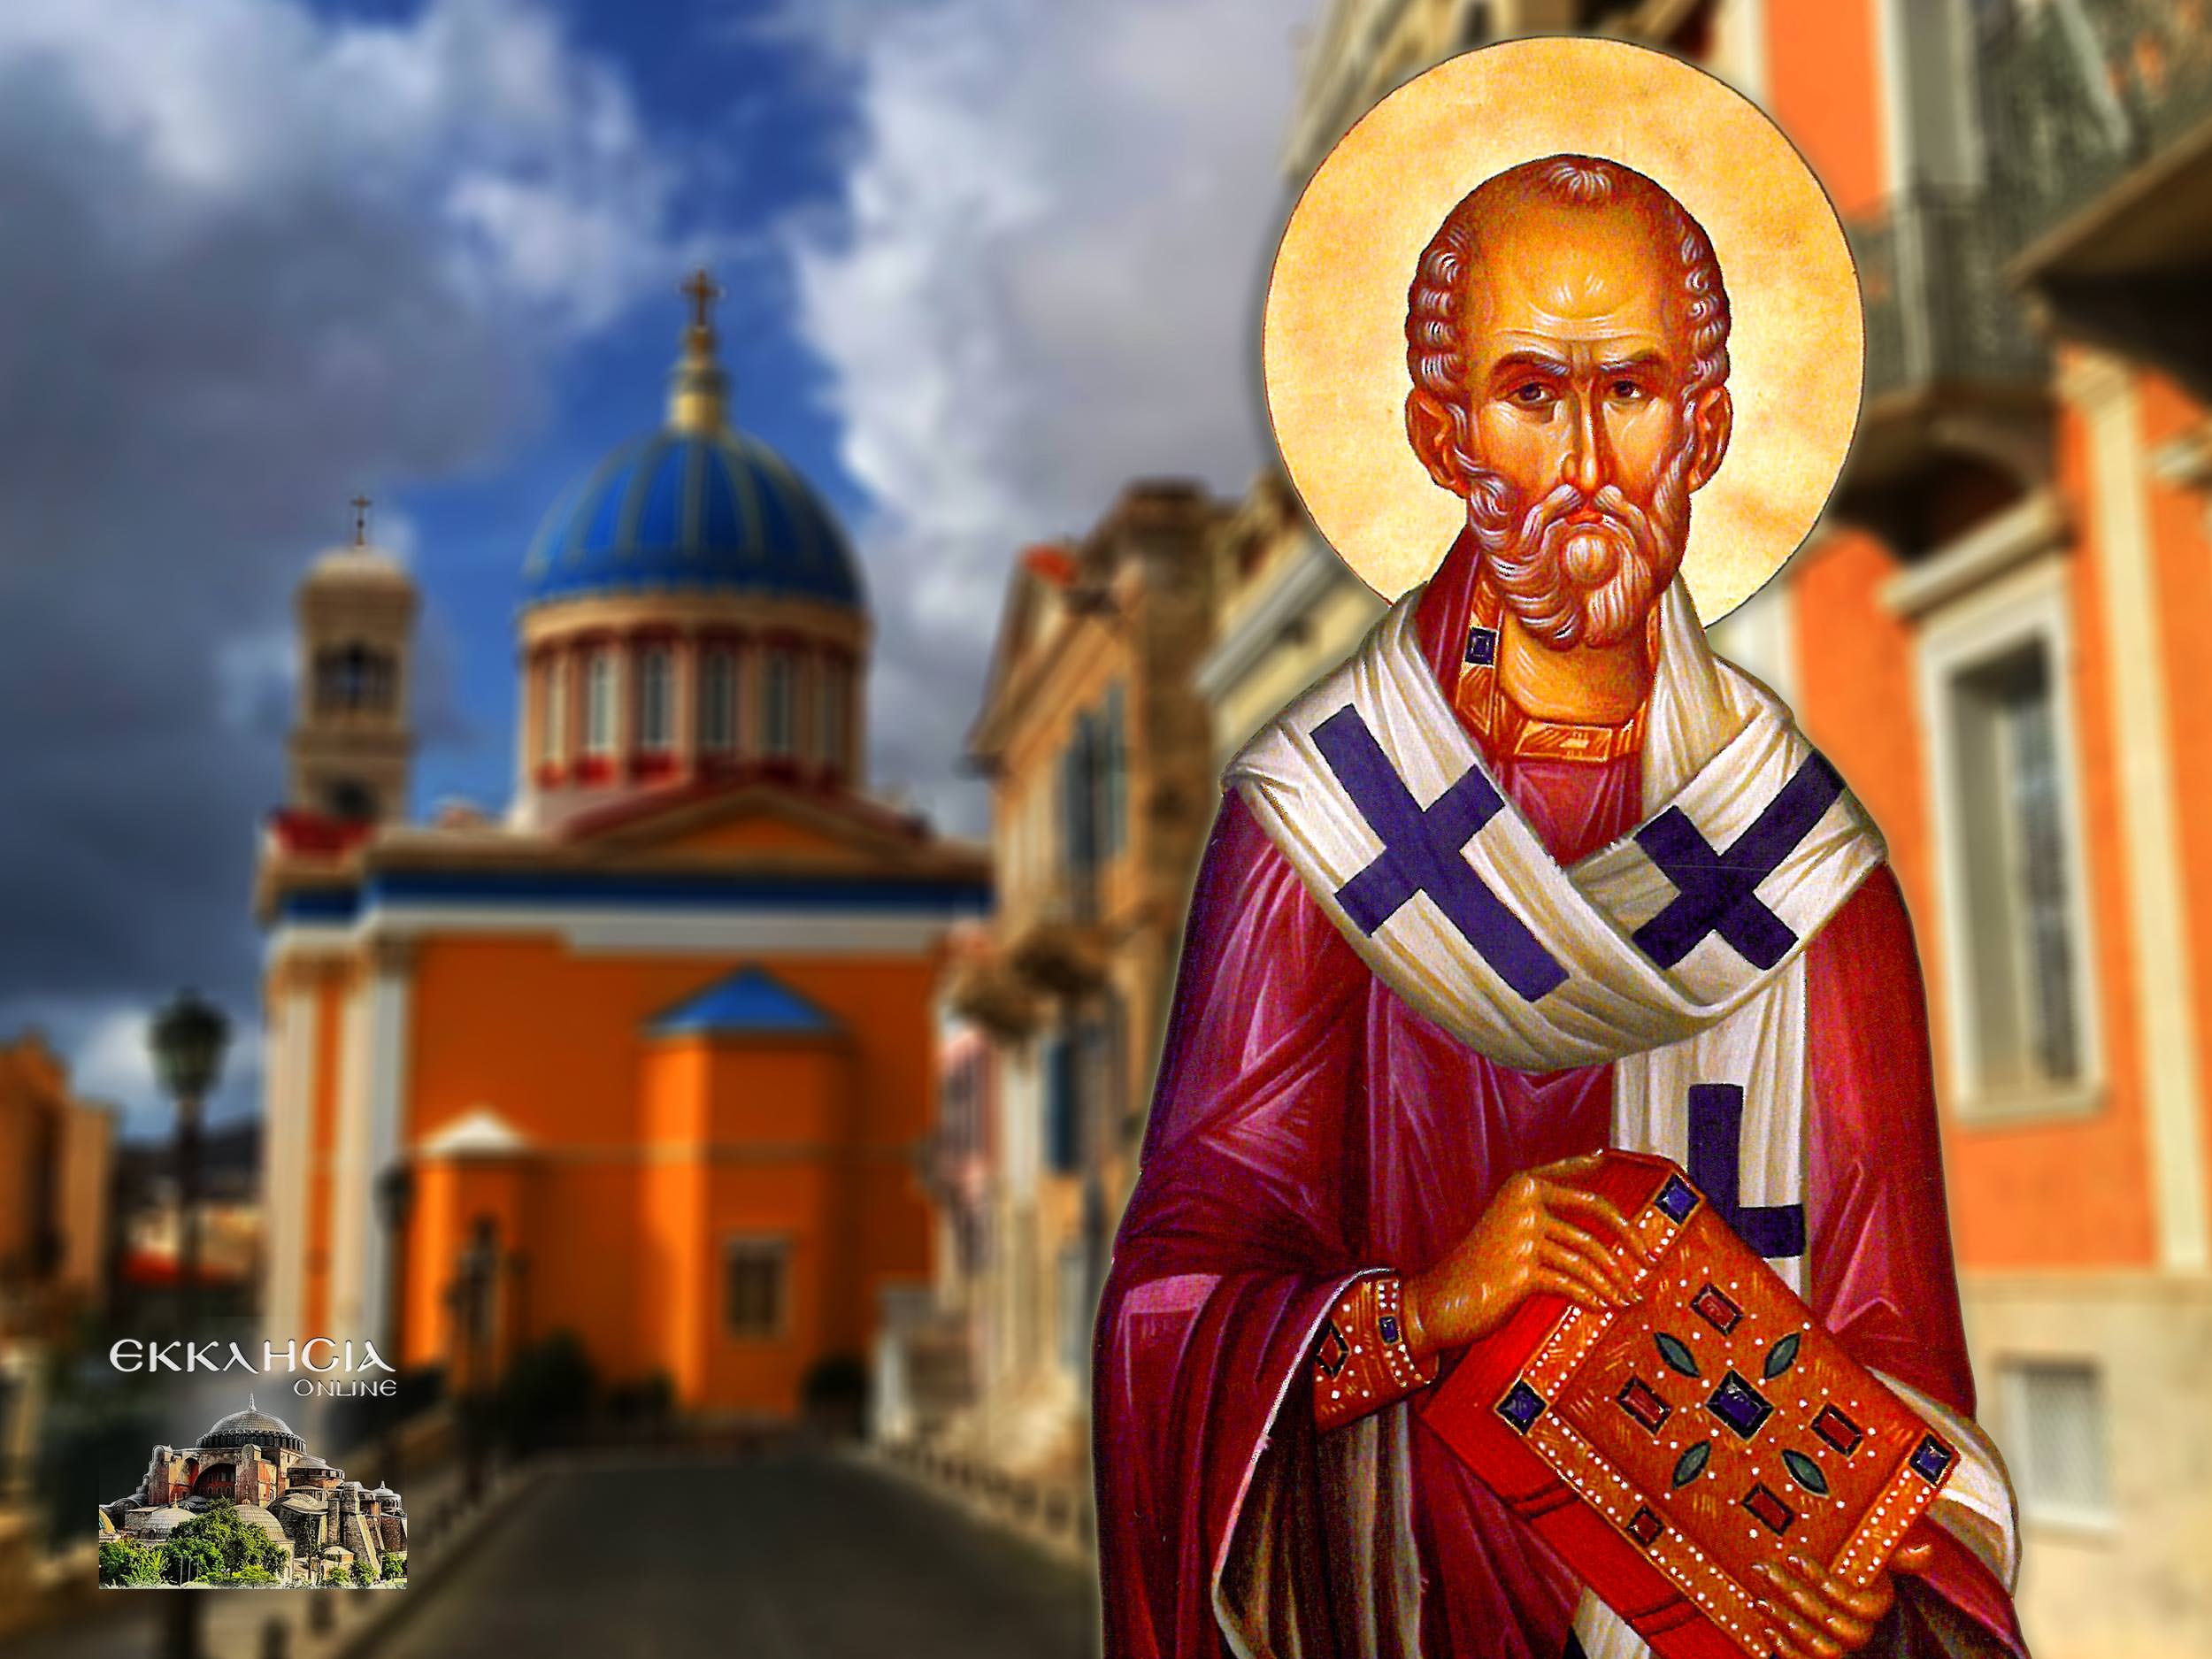 Άγιος Νικόλαος Αρχιεπίσκοπος Μύρων της Λυκίας 6 Δεκεμβρίου